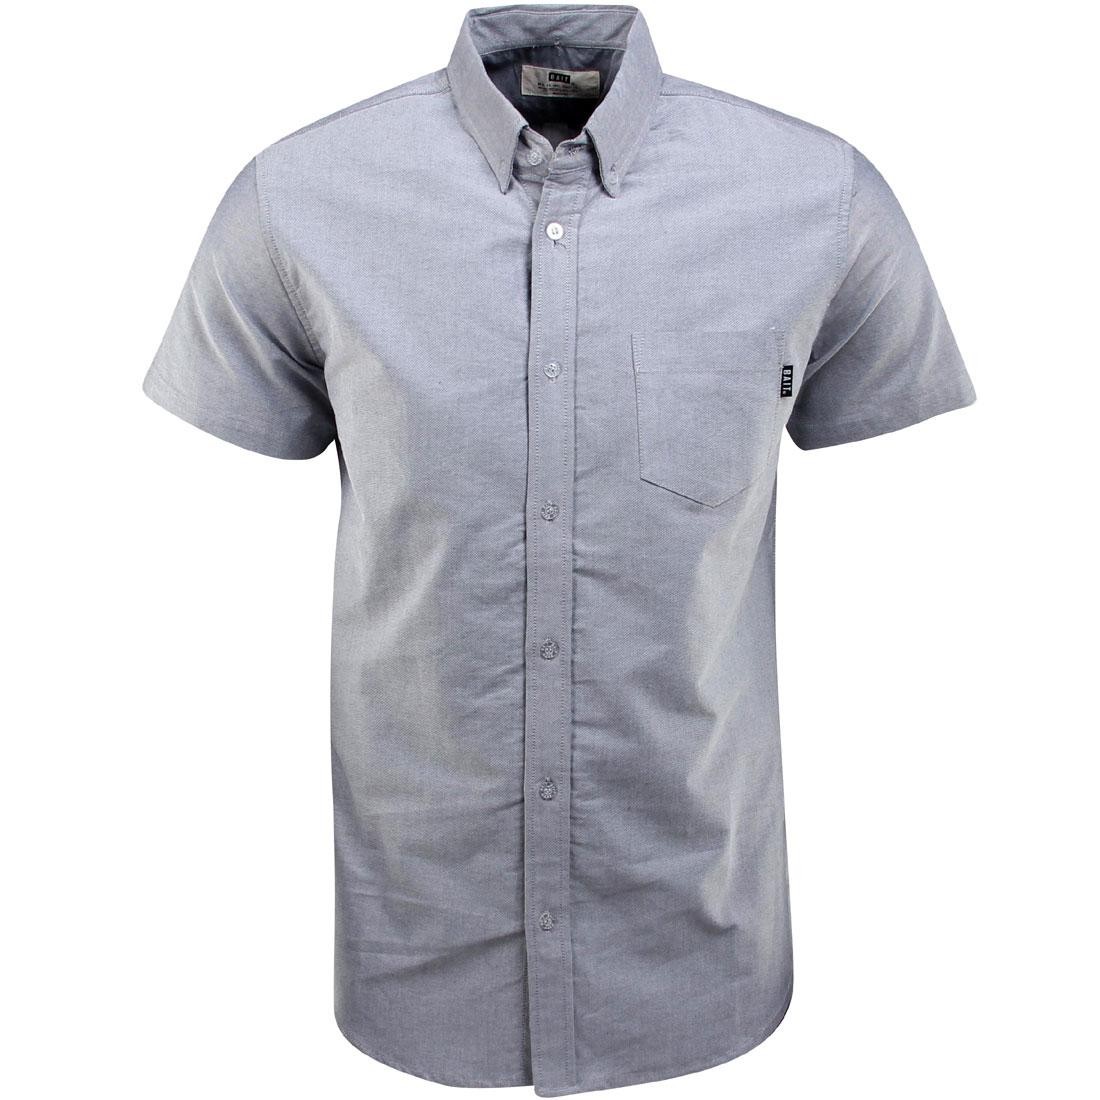 Cheap Urlfreeze Jordan Outlet Oxford Short Sleeve dark shirt (gray)